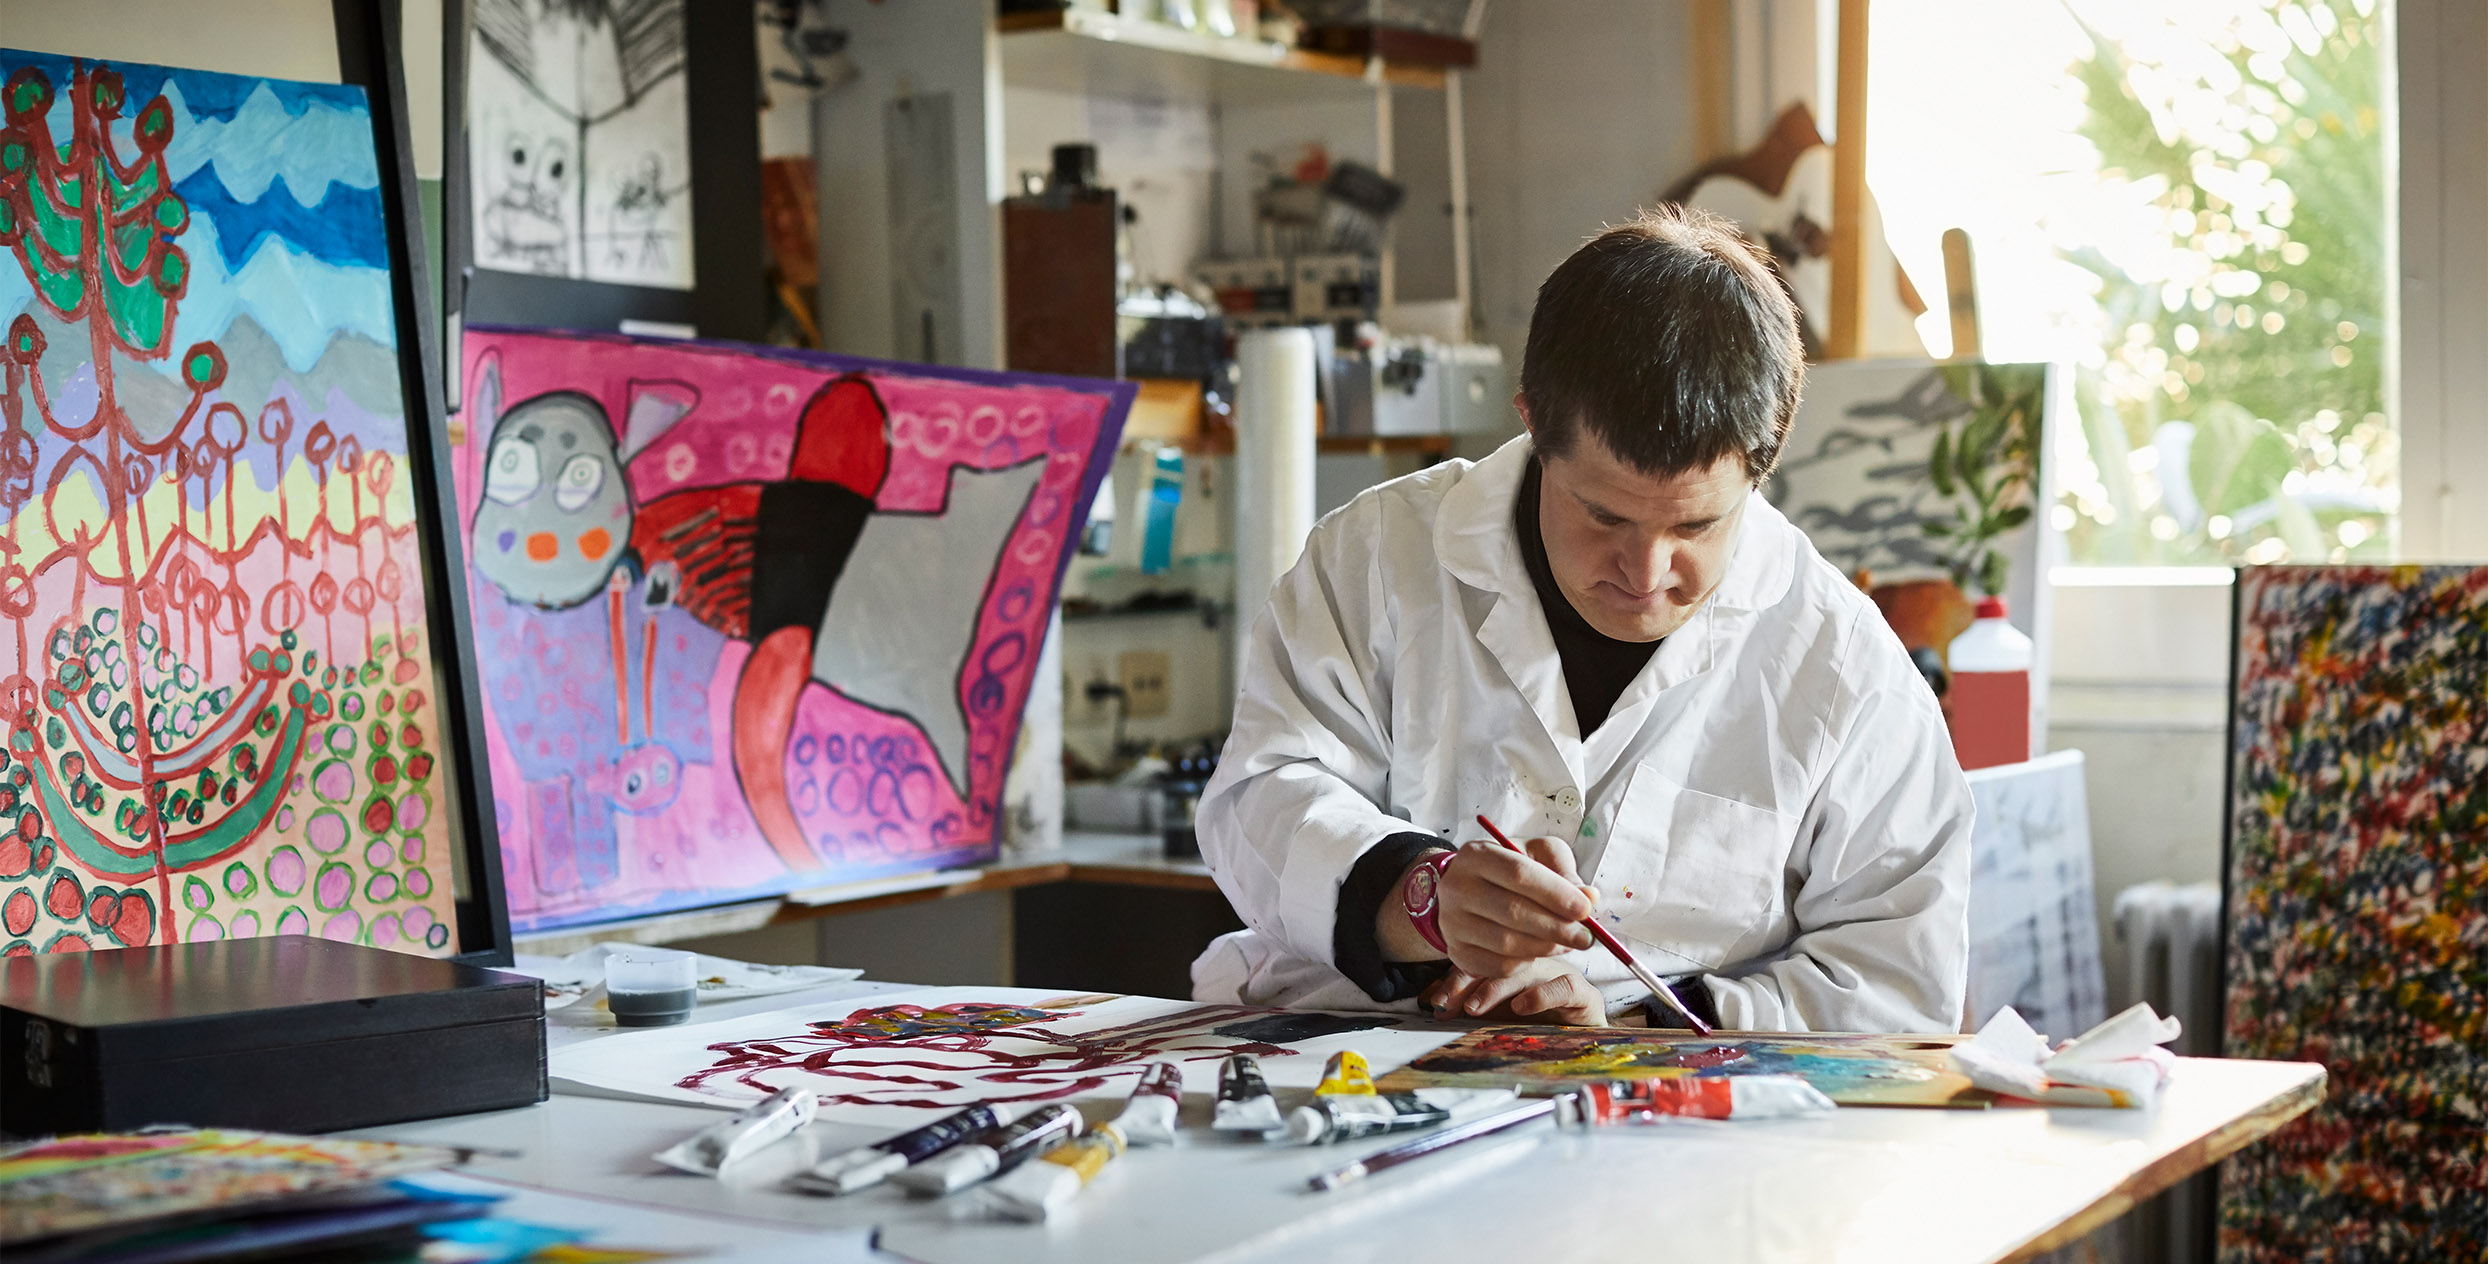 Das Foto zeigt eine Person in einem weissen Kittel, die gerade mit Pinsel und Farben malt.